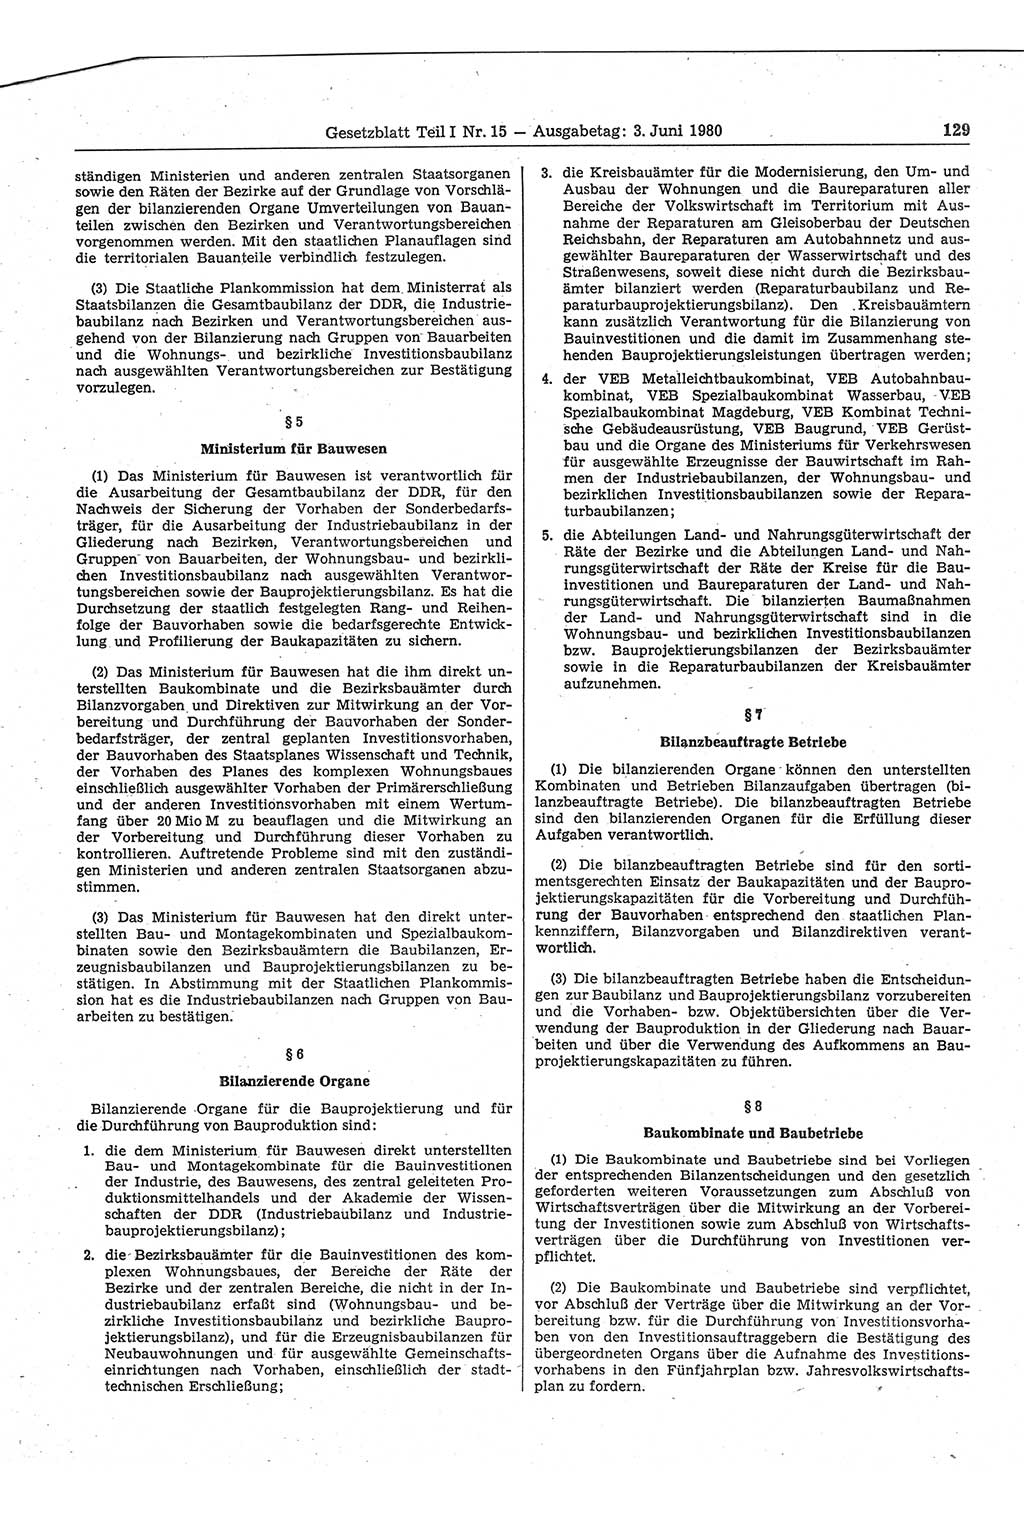 Gesetzblatt (GBl.) der Deutschen Demokratischen Republik (DDR) Teil Ⅰ 1980, Seite 129 (GBl. DDR Ⅰ 1980, S. 129)